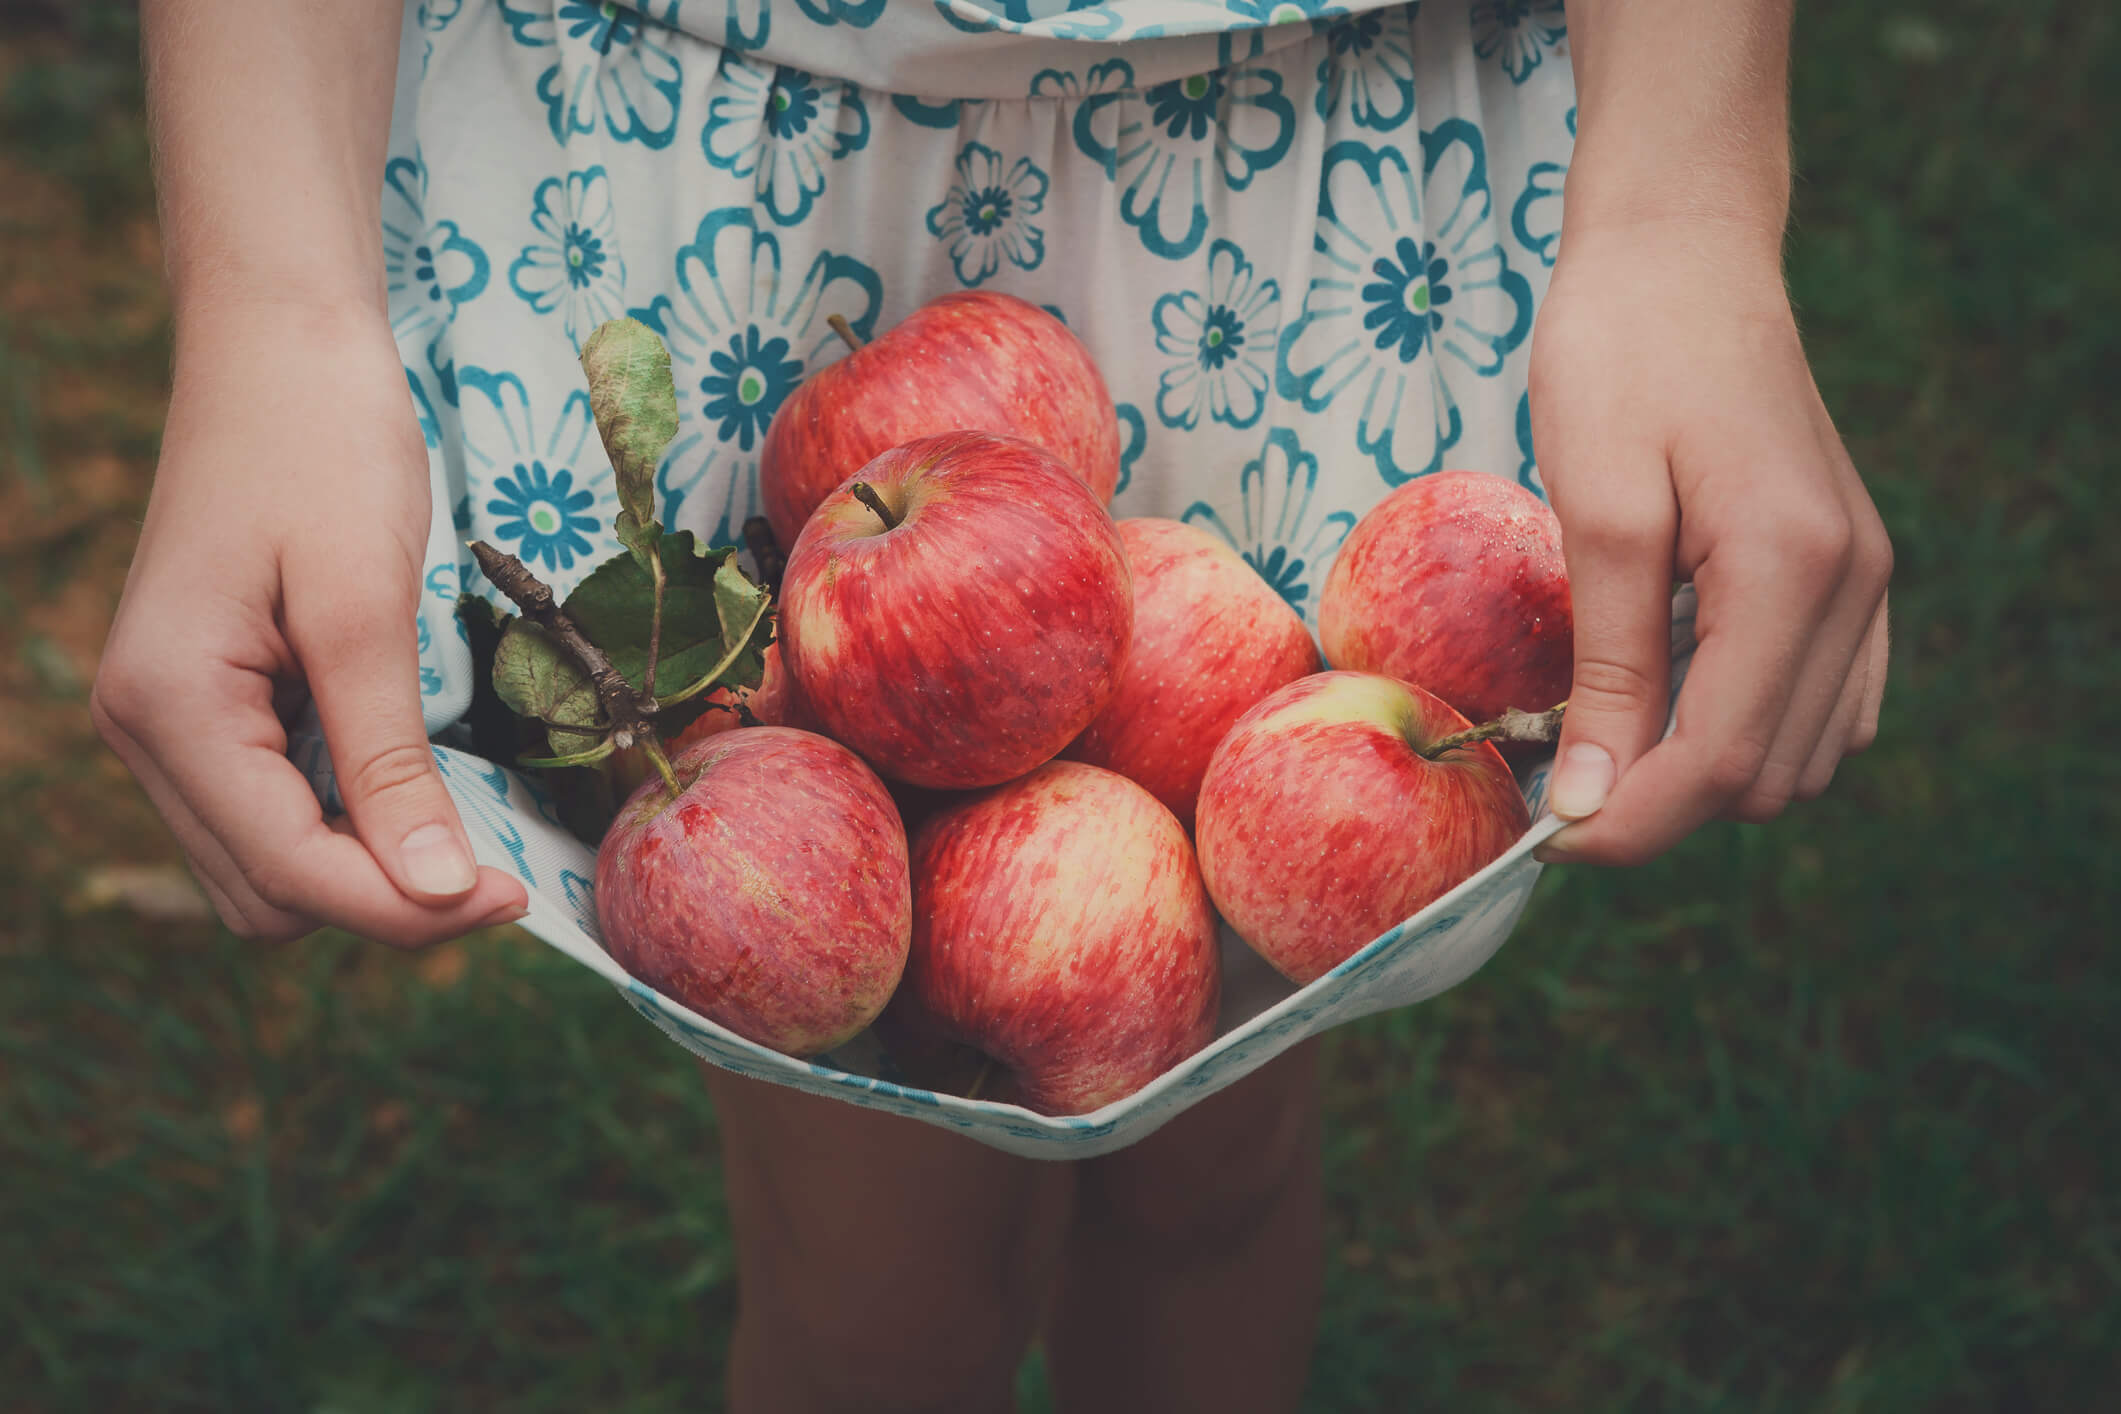 Girl holds apples in skirt hemline